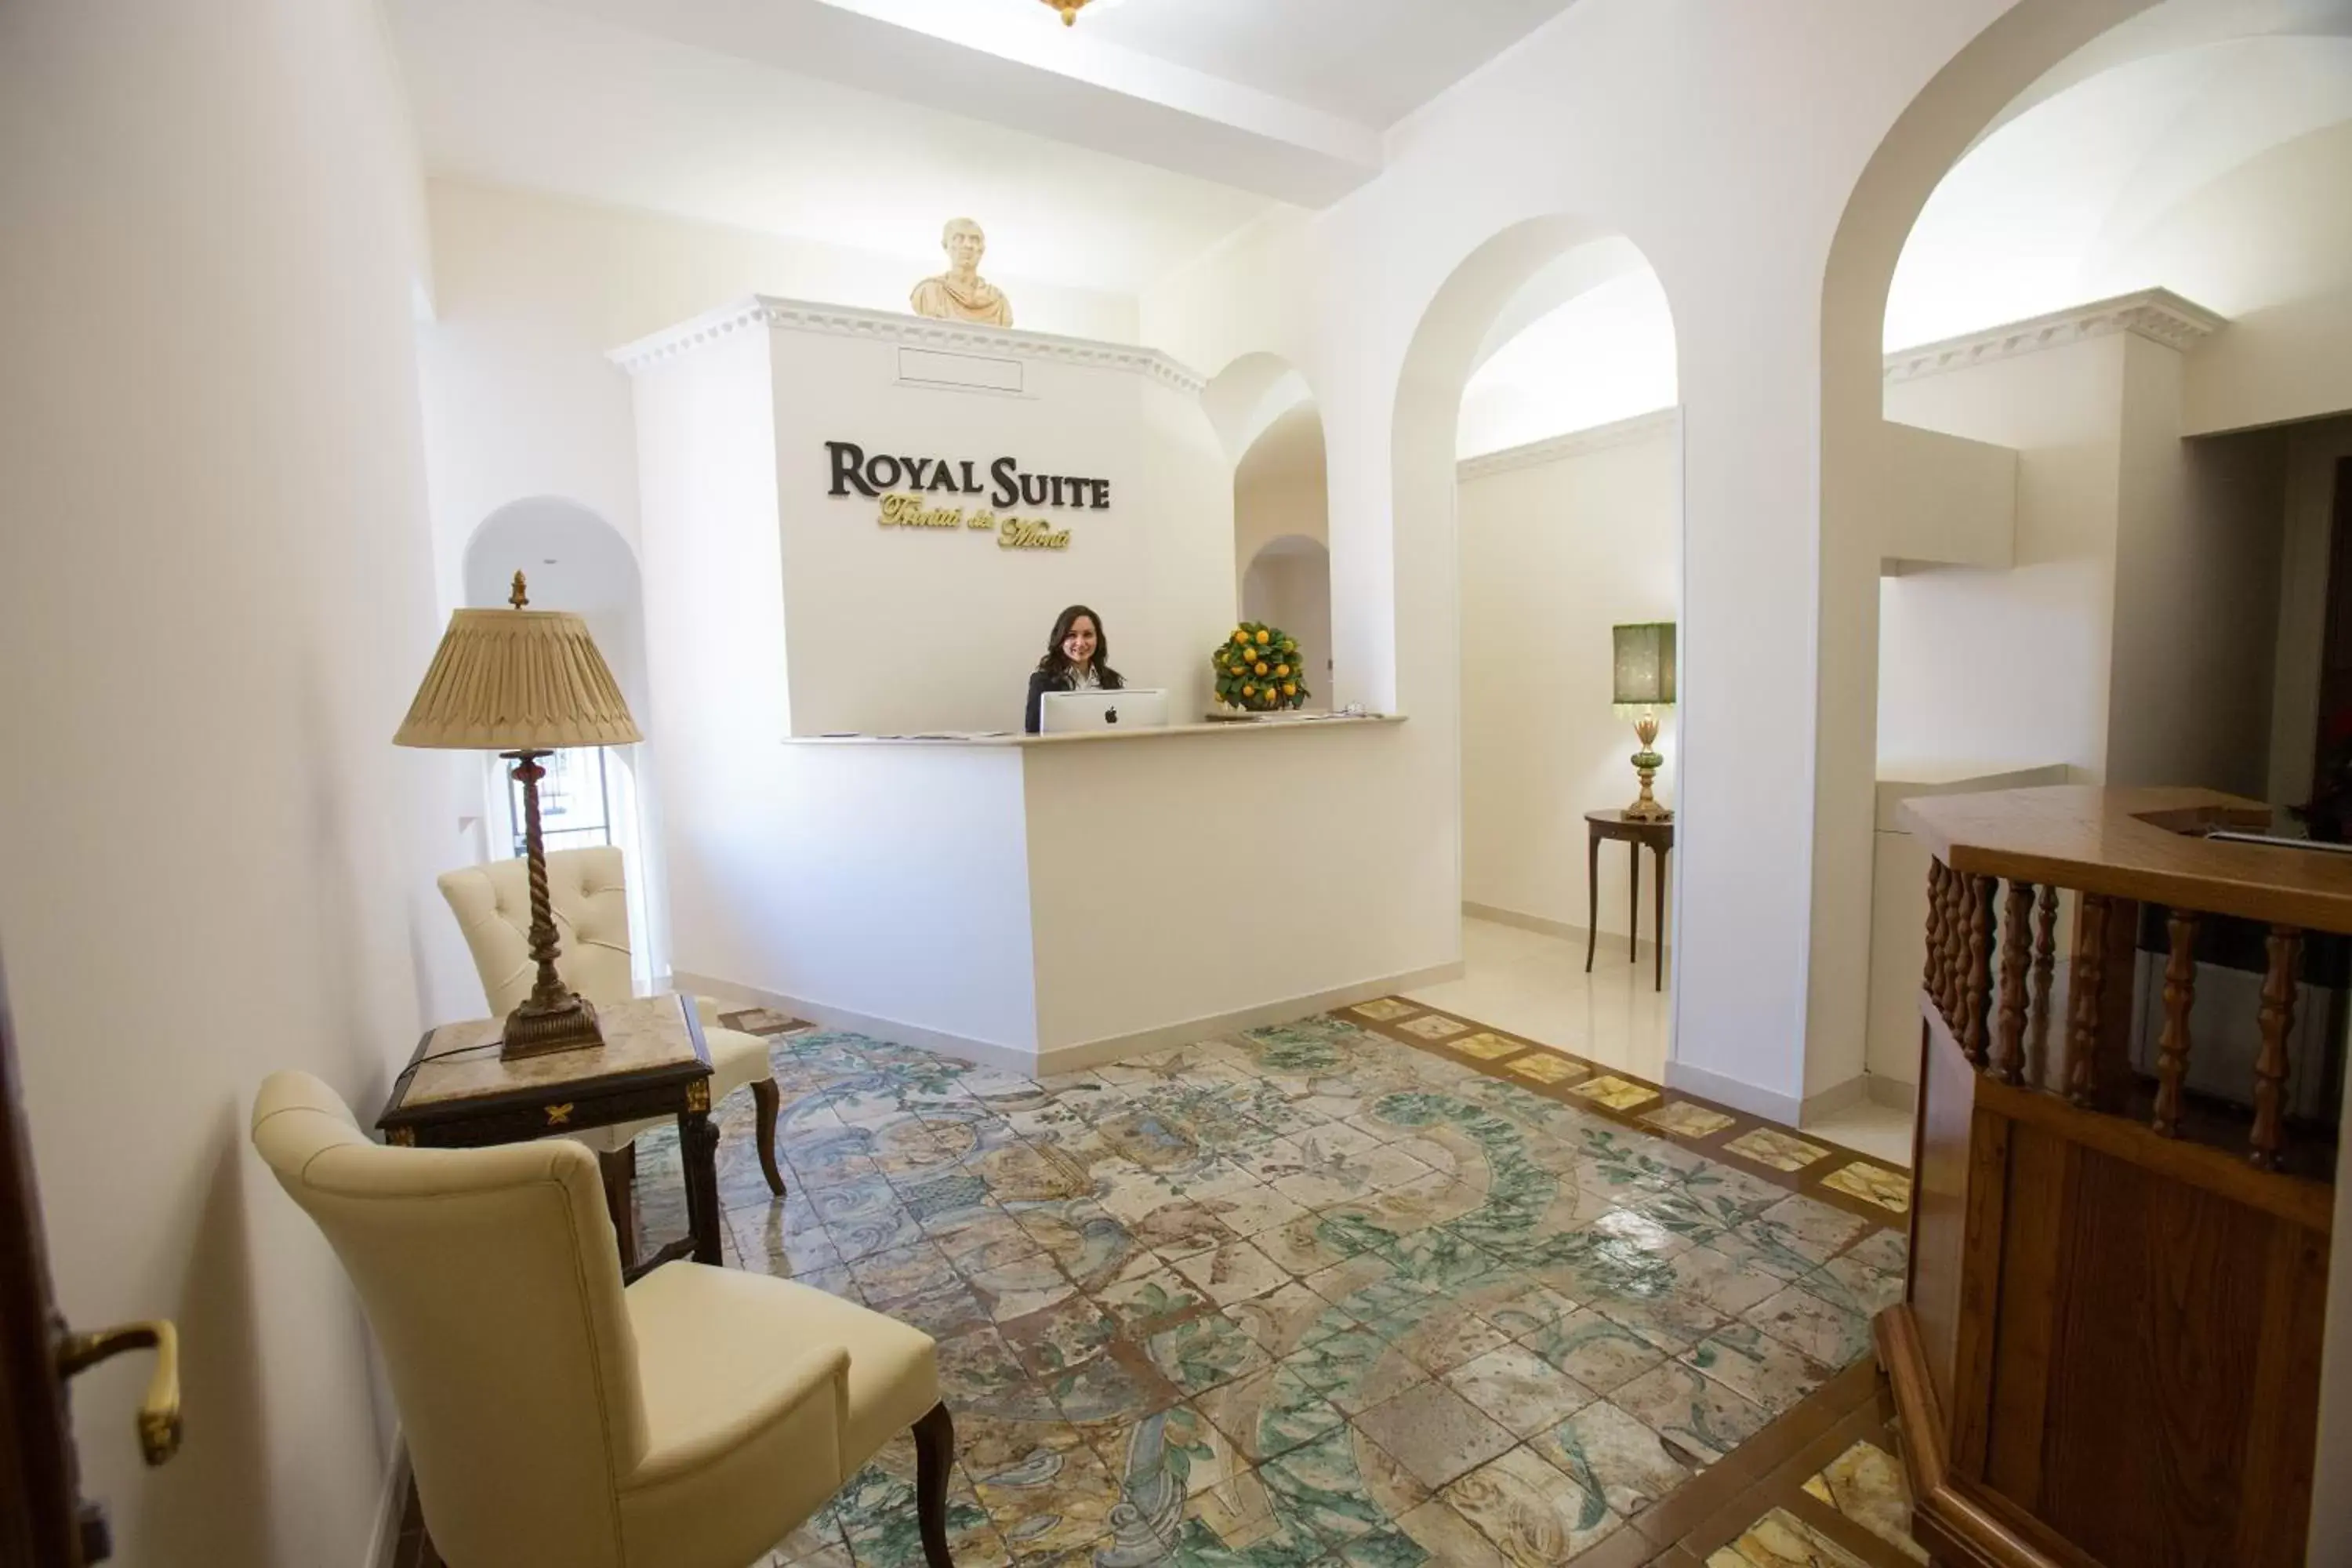 Lobby or reception, Lobby/Reception in Royal Suite Trinità Dei Monti